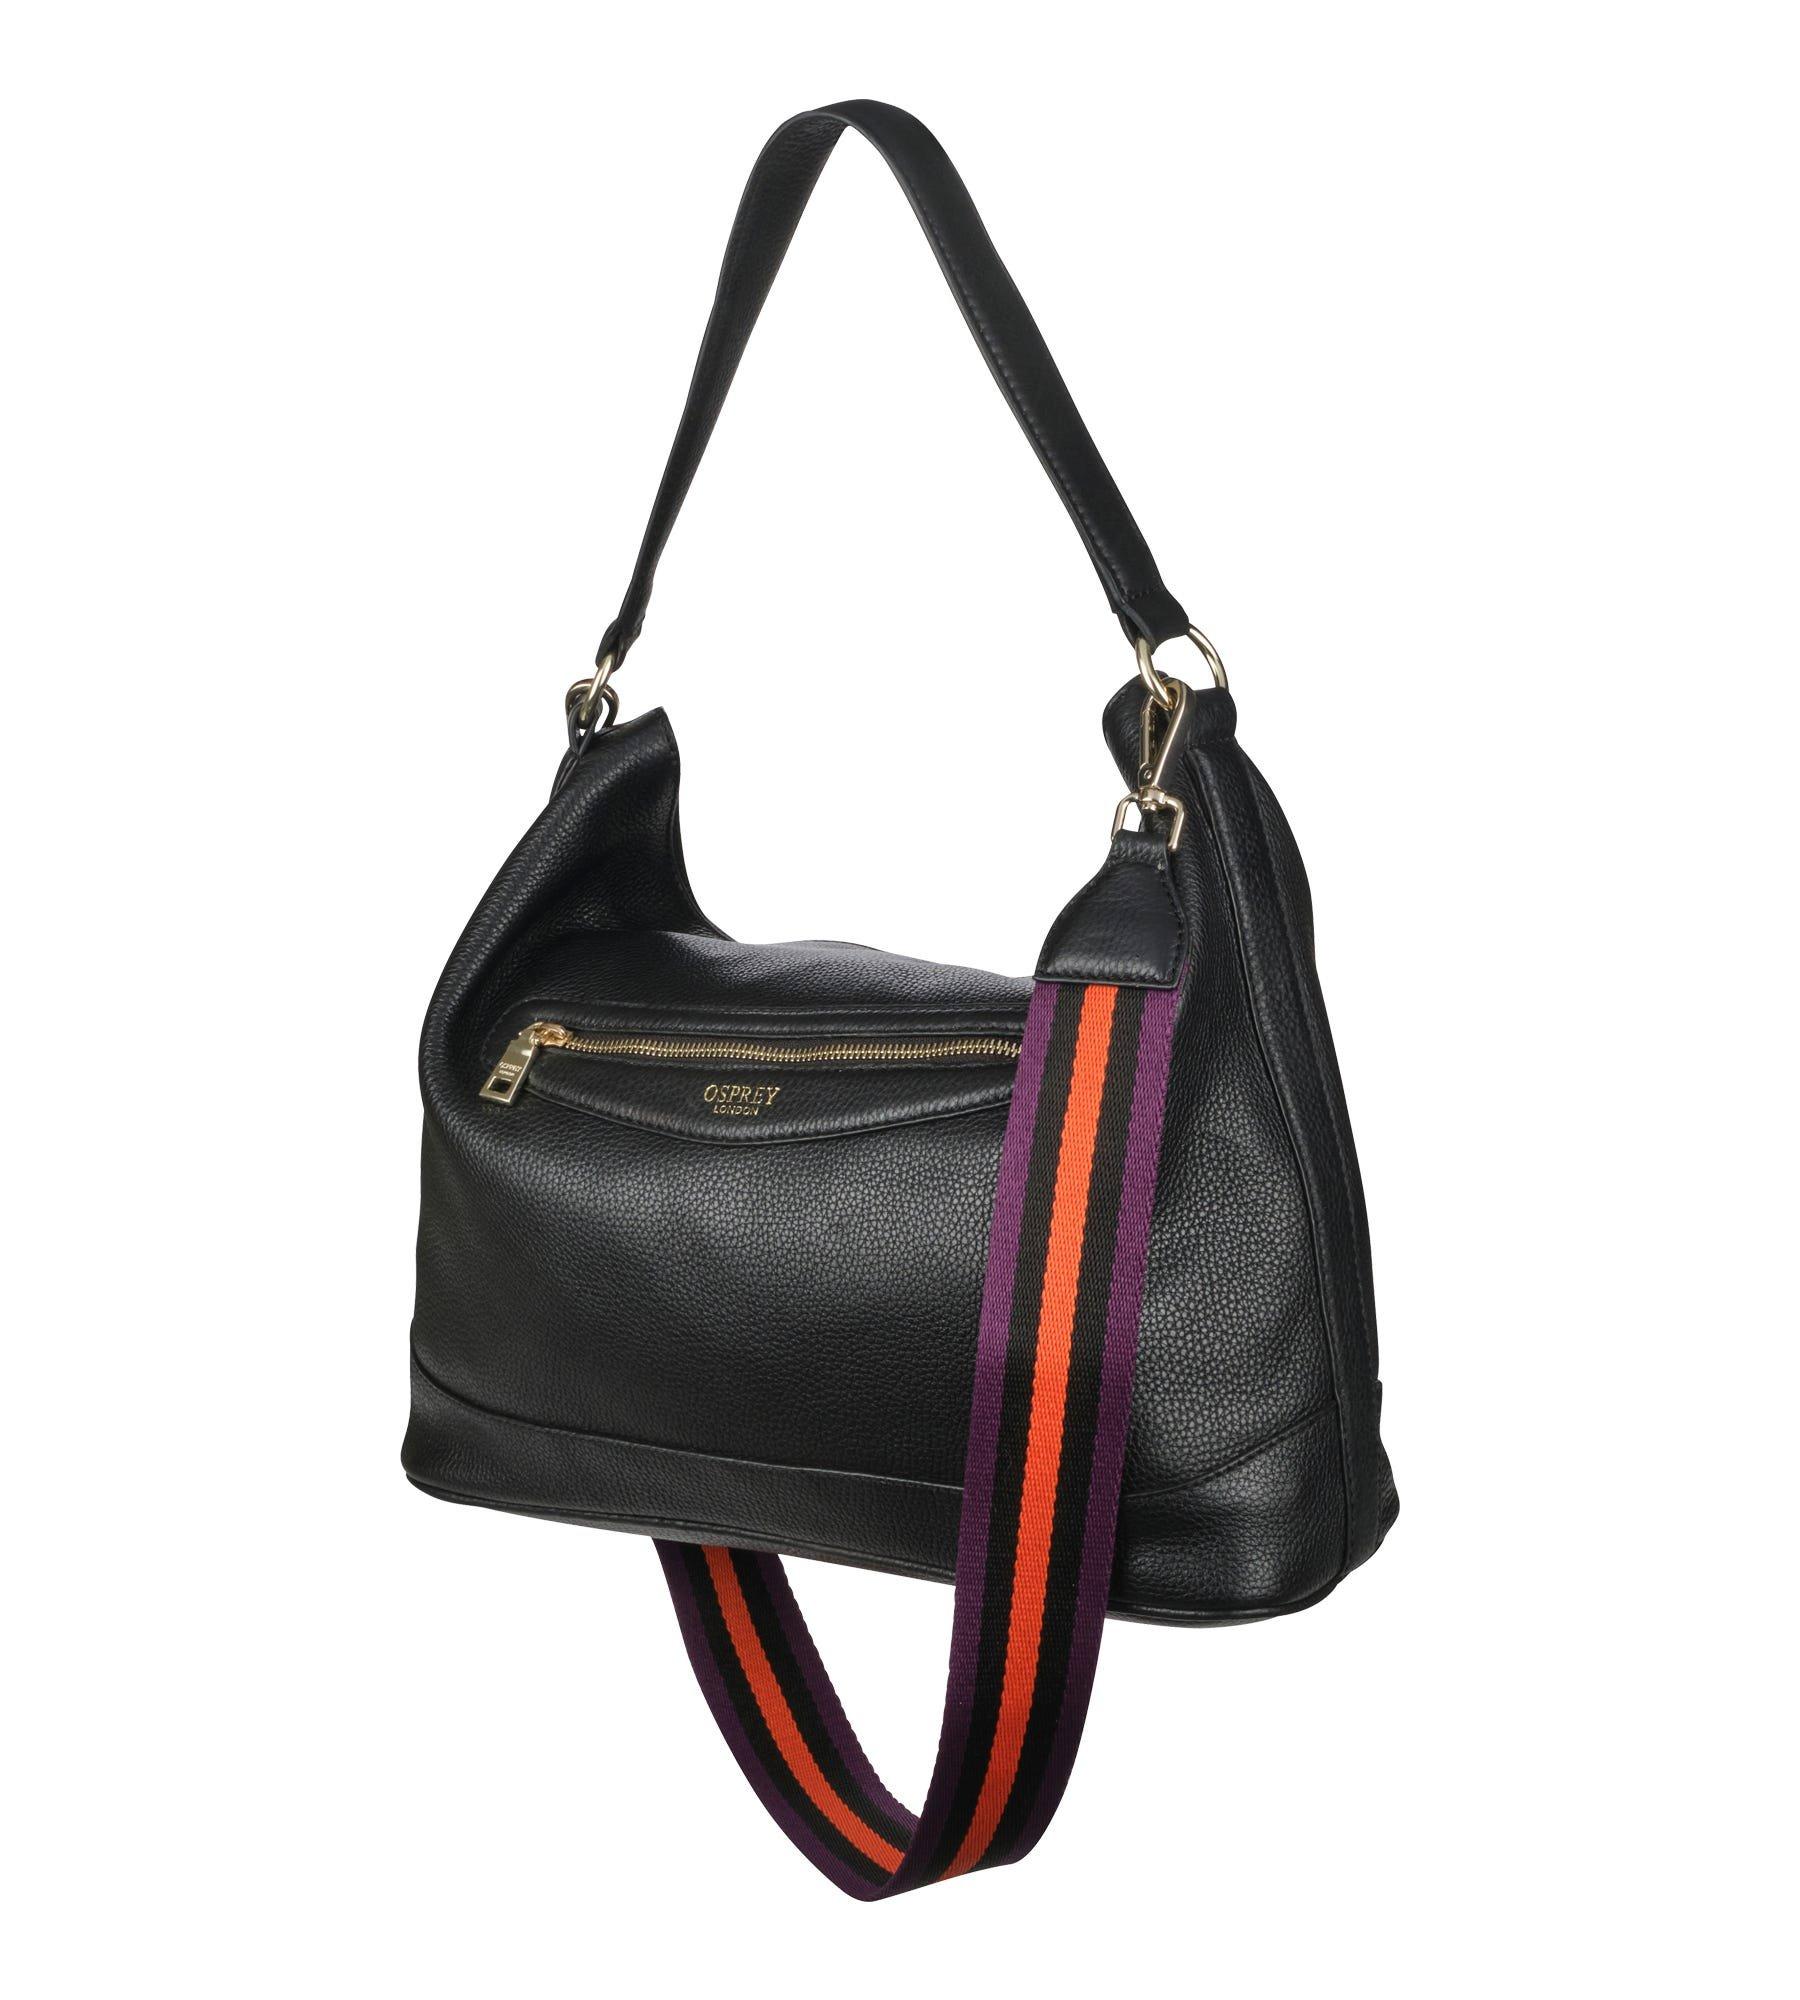 Osprey Handbags, Purses & Wallets for Women | Nordstrom